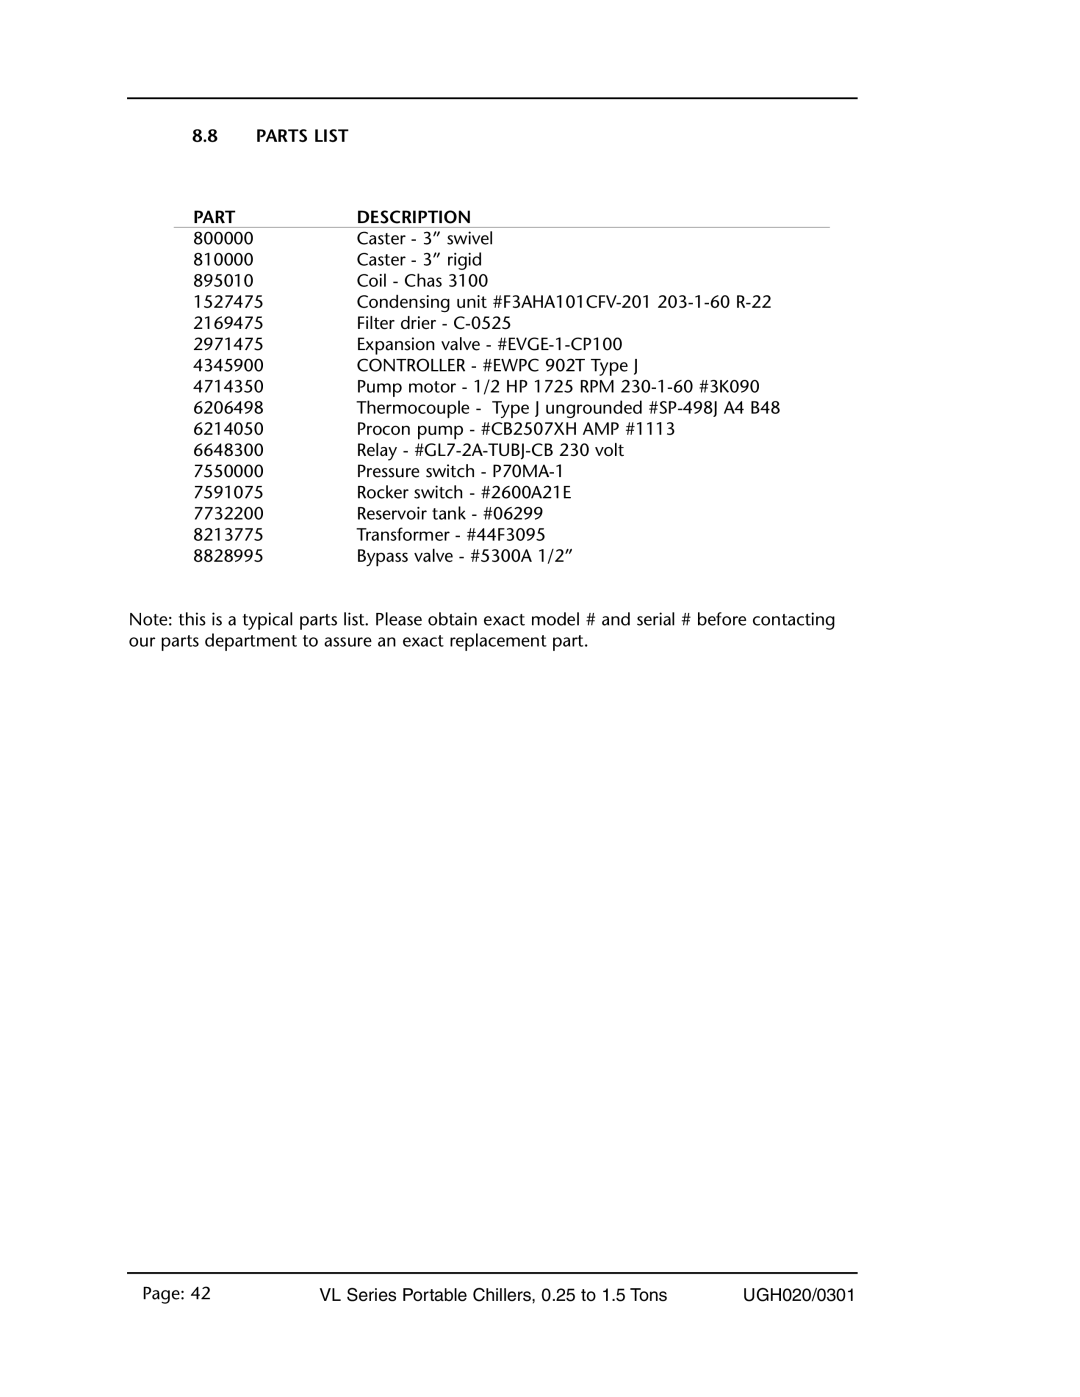 Conair VL Series, 0.25 to 1.5 ton manual 8.8PARTS LIST, Part, Description 